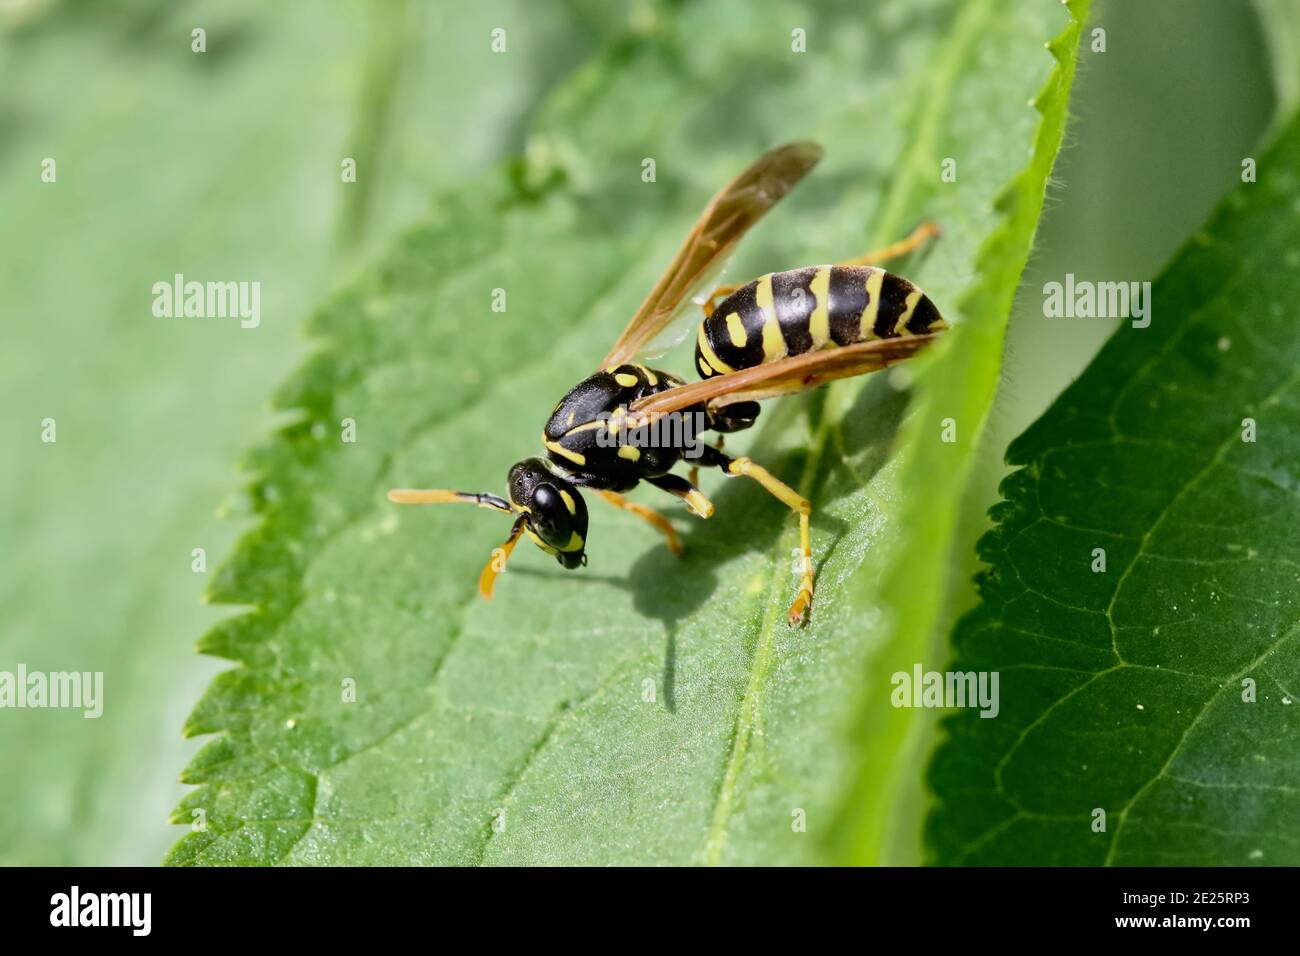 Wasp sitting on leaf Stock Photo